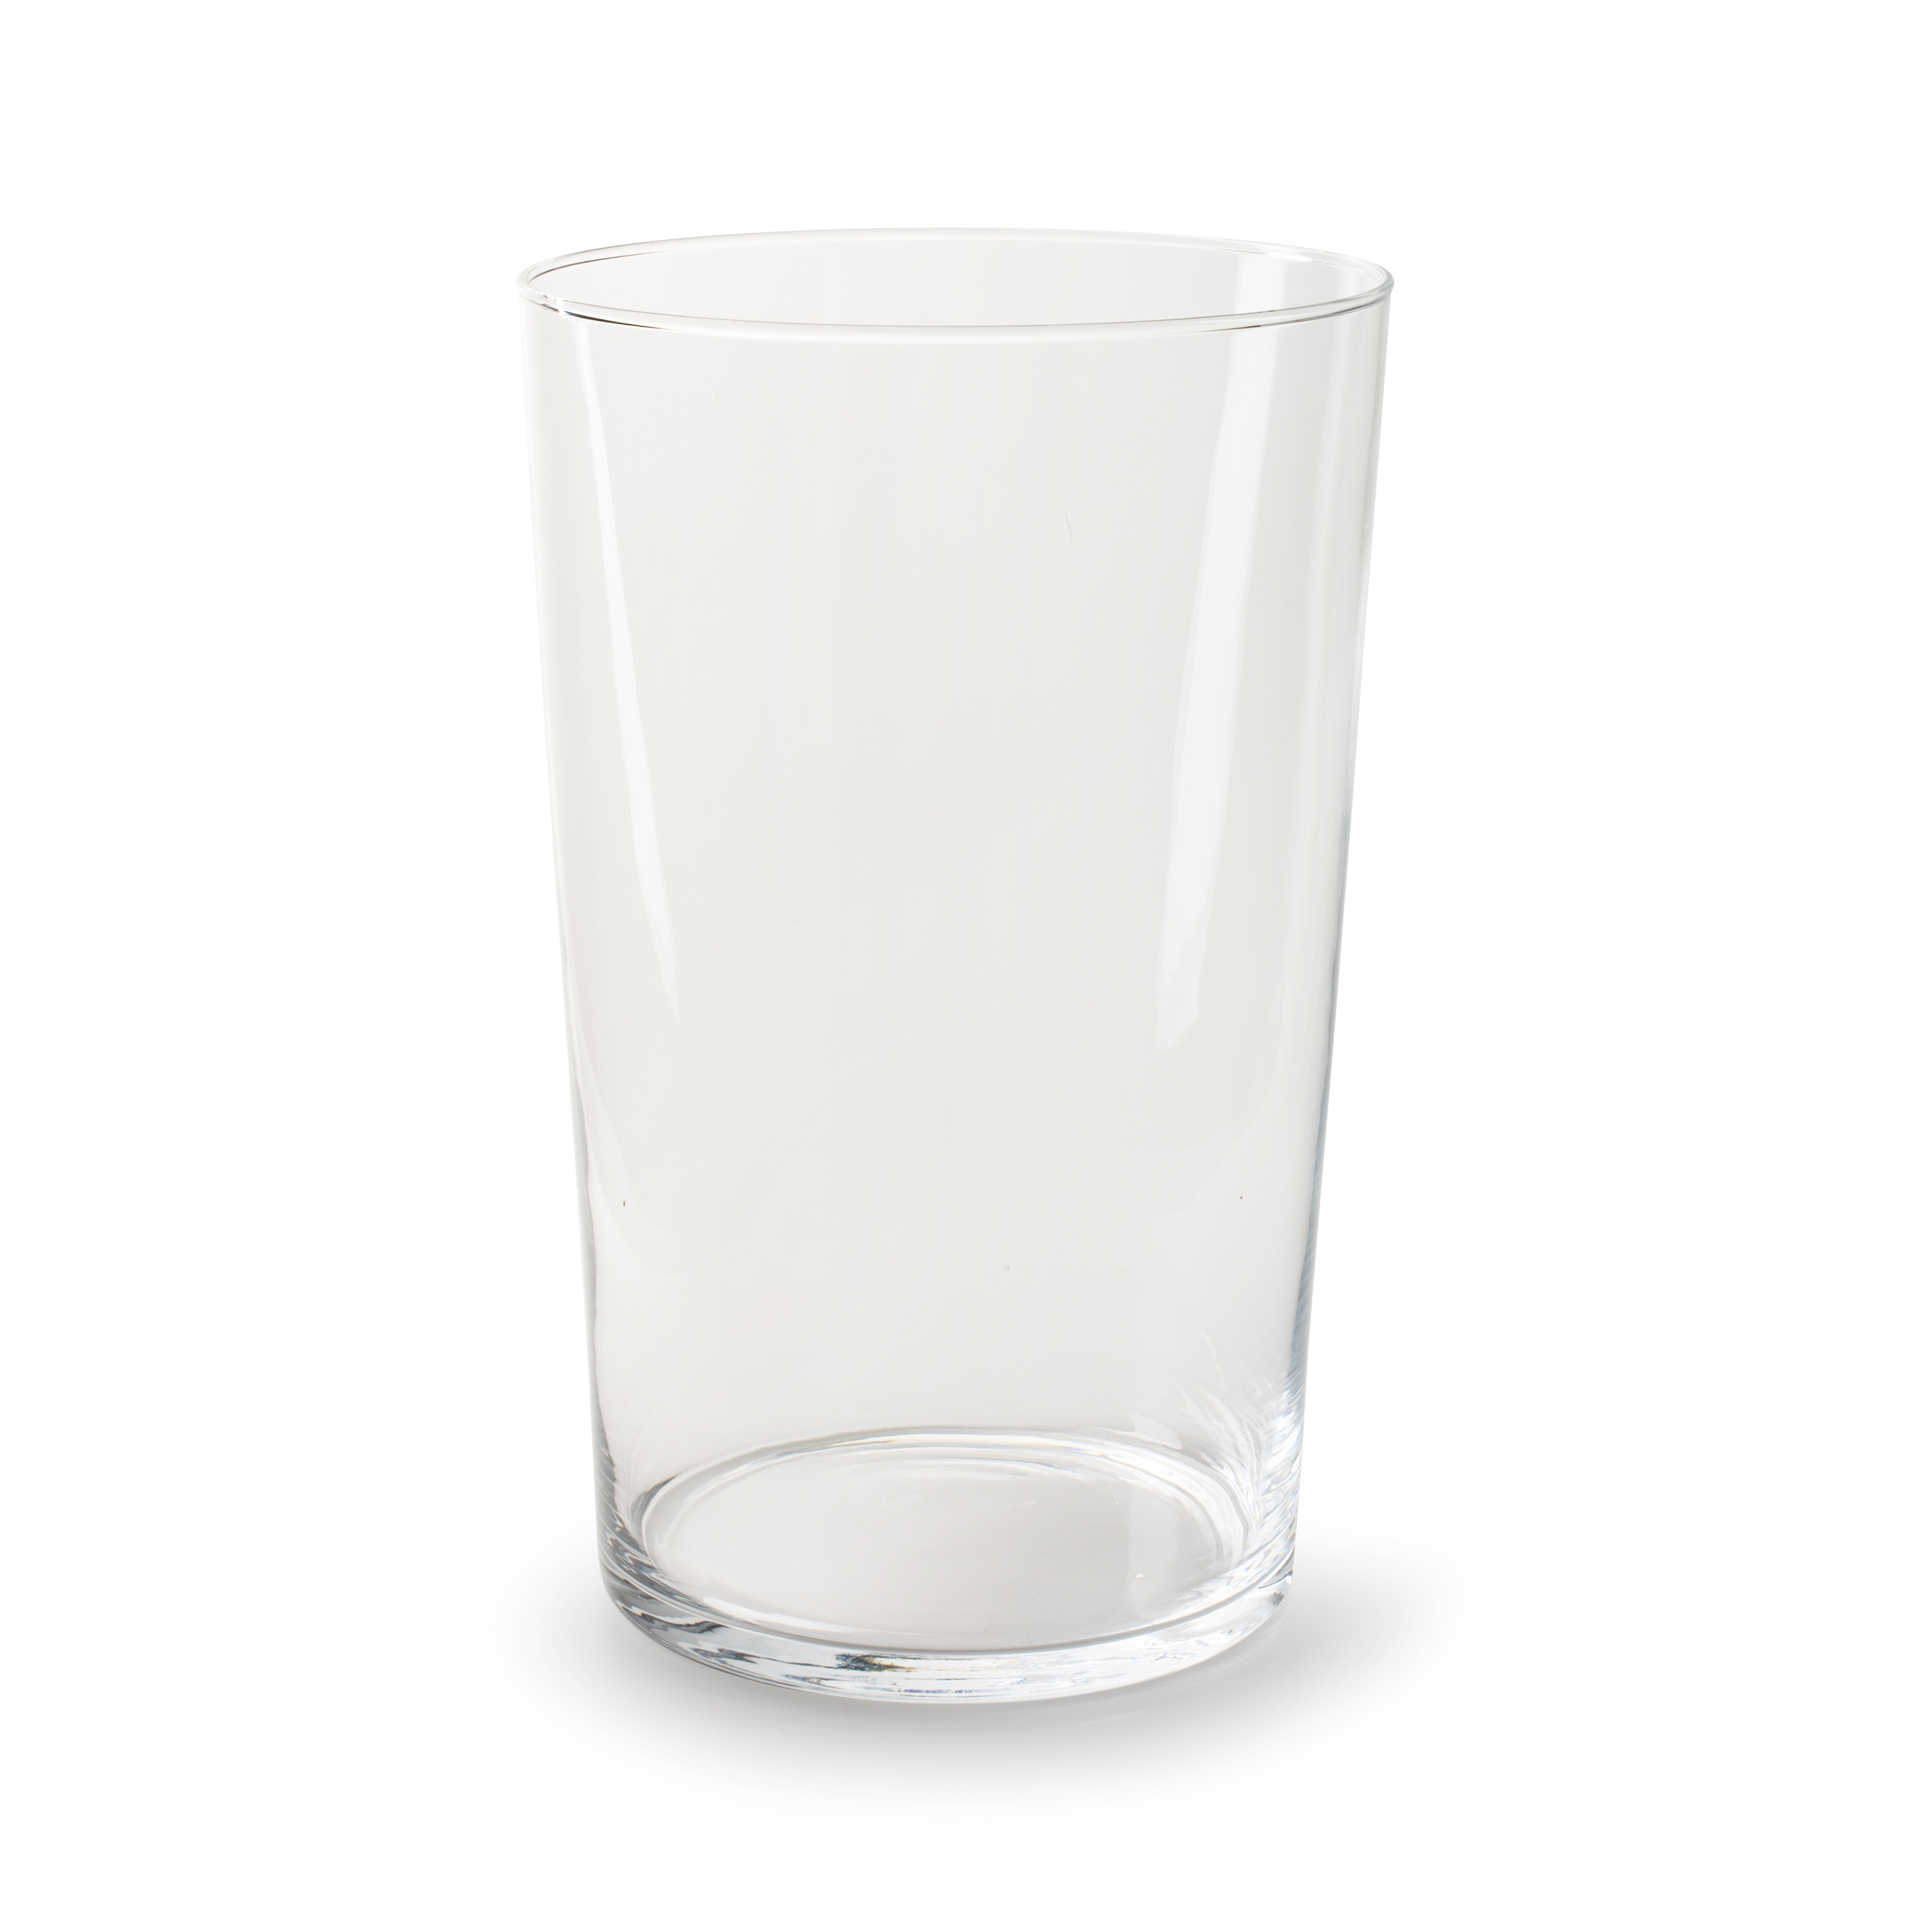 Jodeco Bloemenvaas Nina - helder transparant - glas - D22 x H35 cm - klassieke vorm vaas -